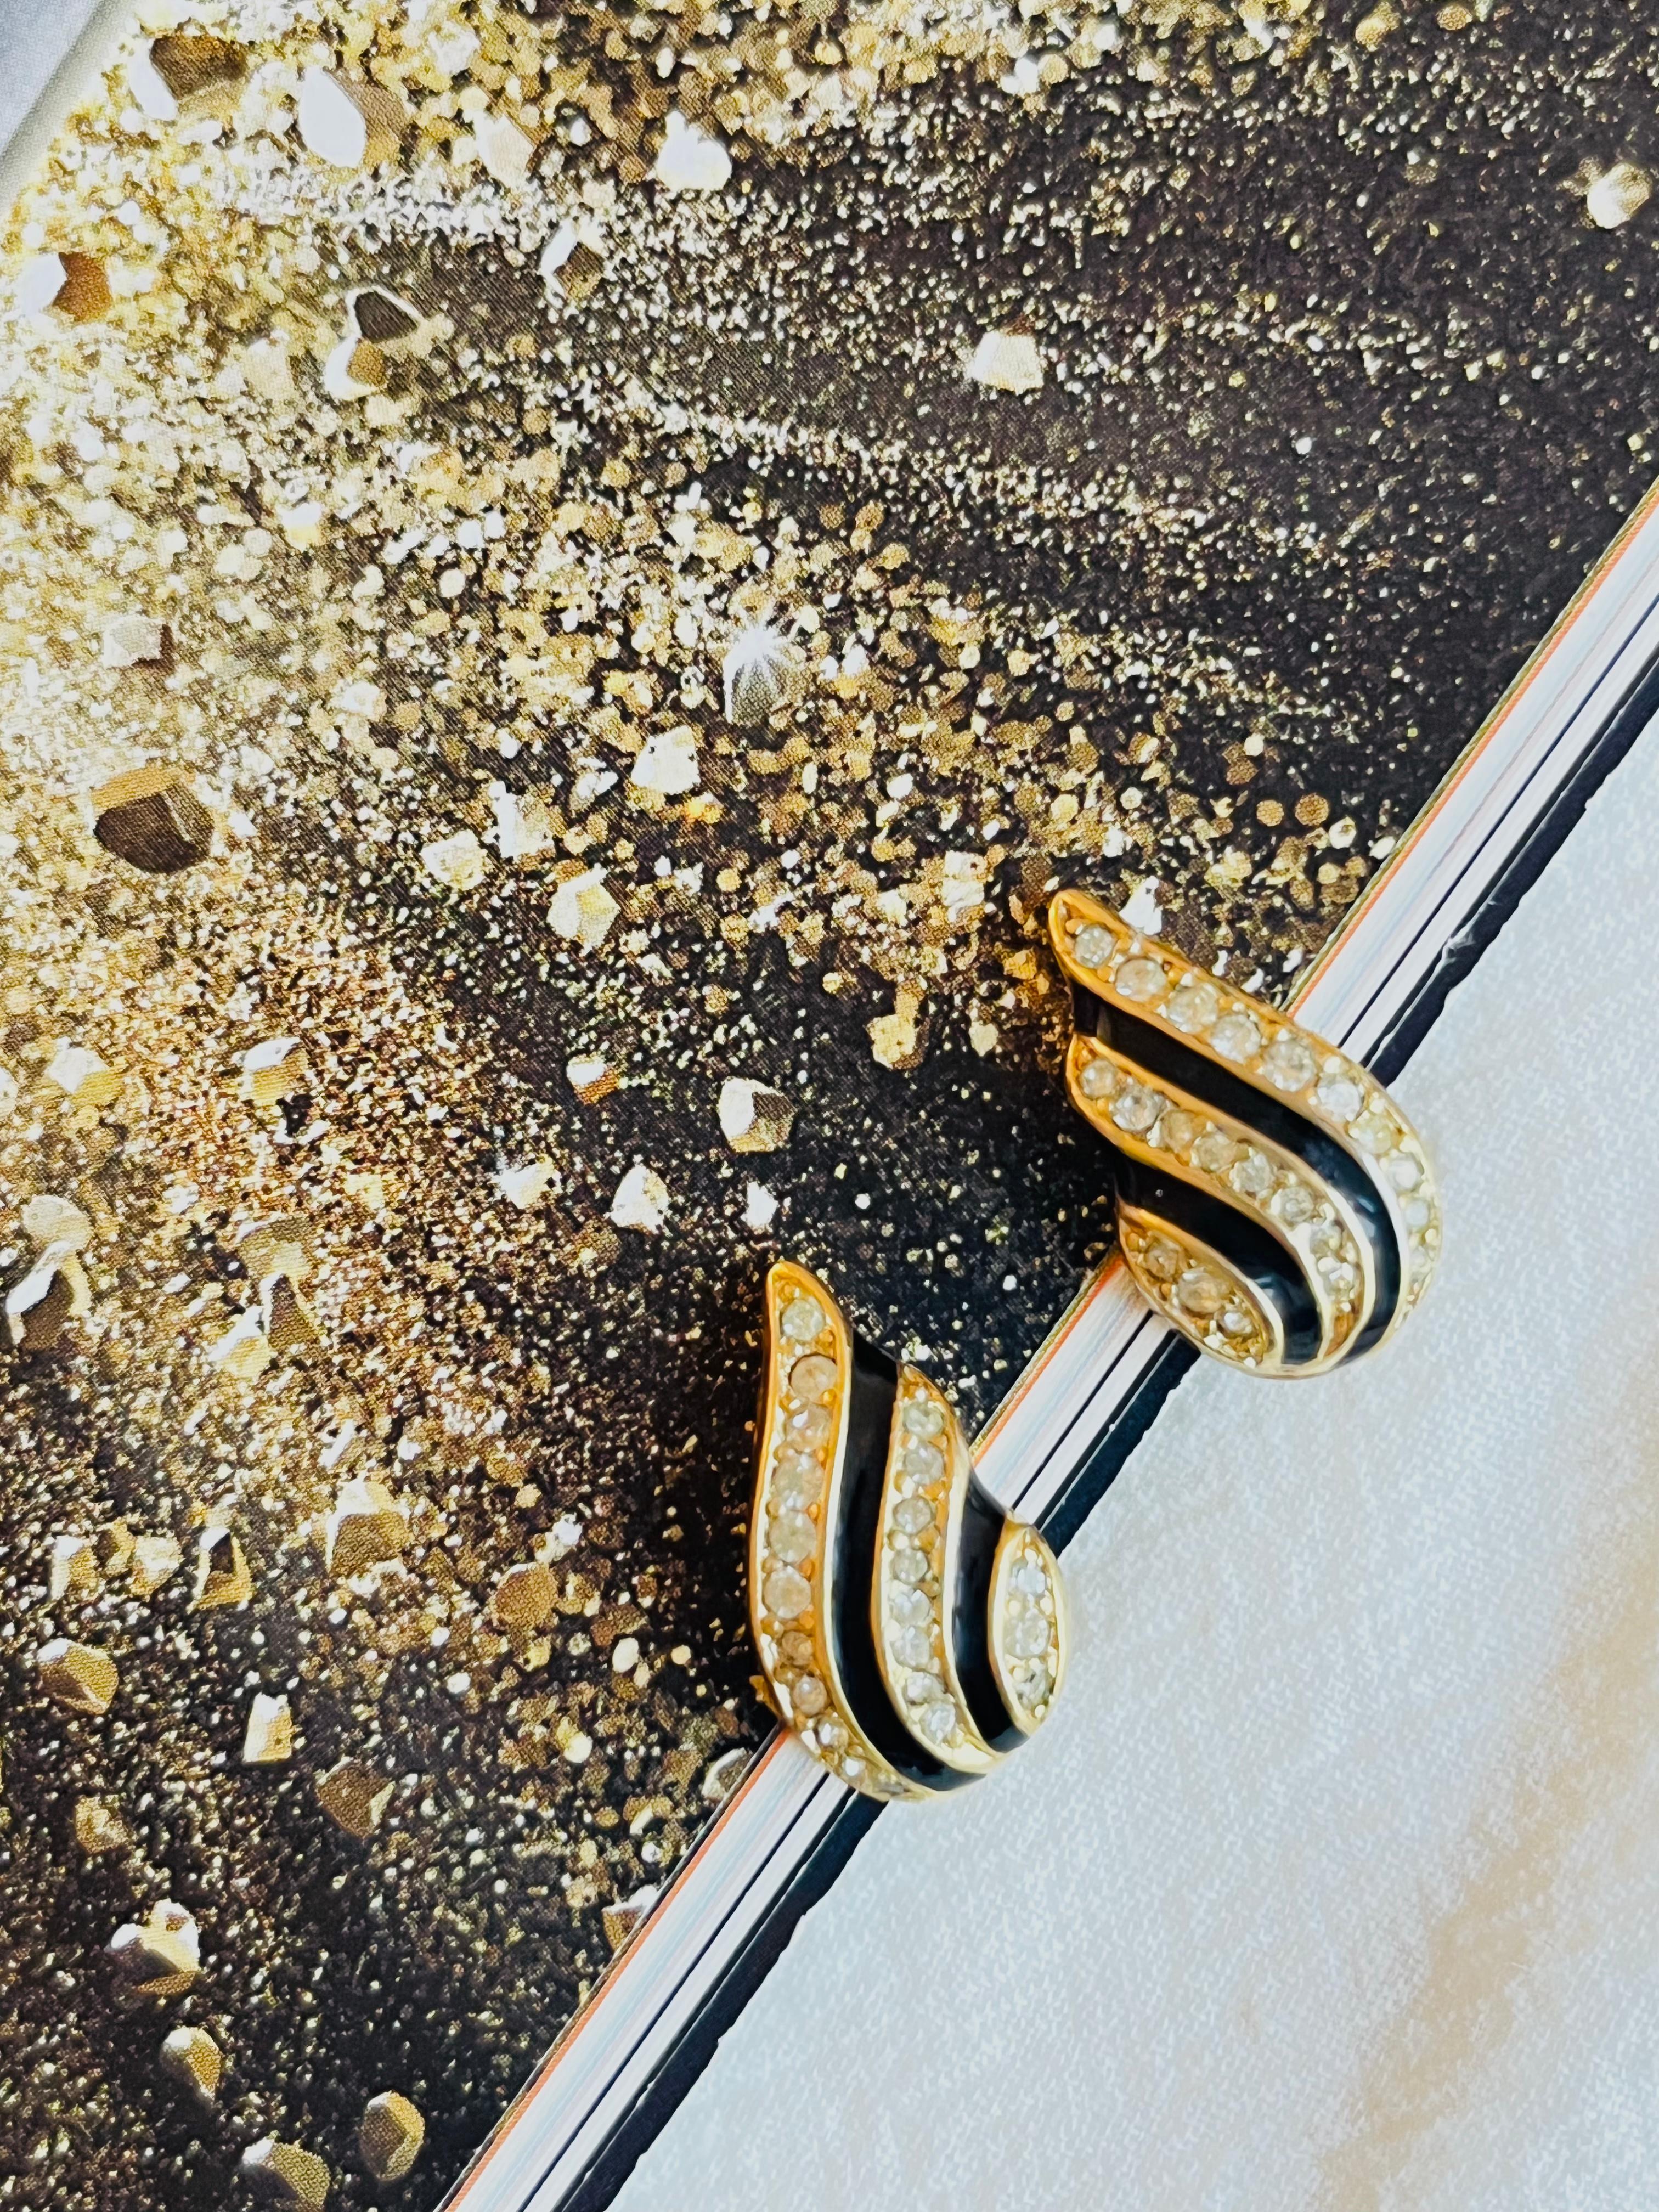 Réputé pour ses designs élégants et intemporels, Christian Dior présente ces boucles d'oreilles. Fabriquée en laiton doré poli, cette pièce est ornée de cristaux Swarovski éblouissants et se termine par des détails en émail noir. Signé au dos.

Très